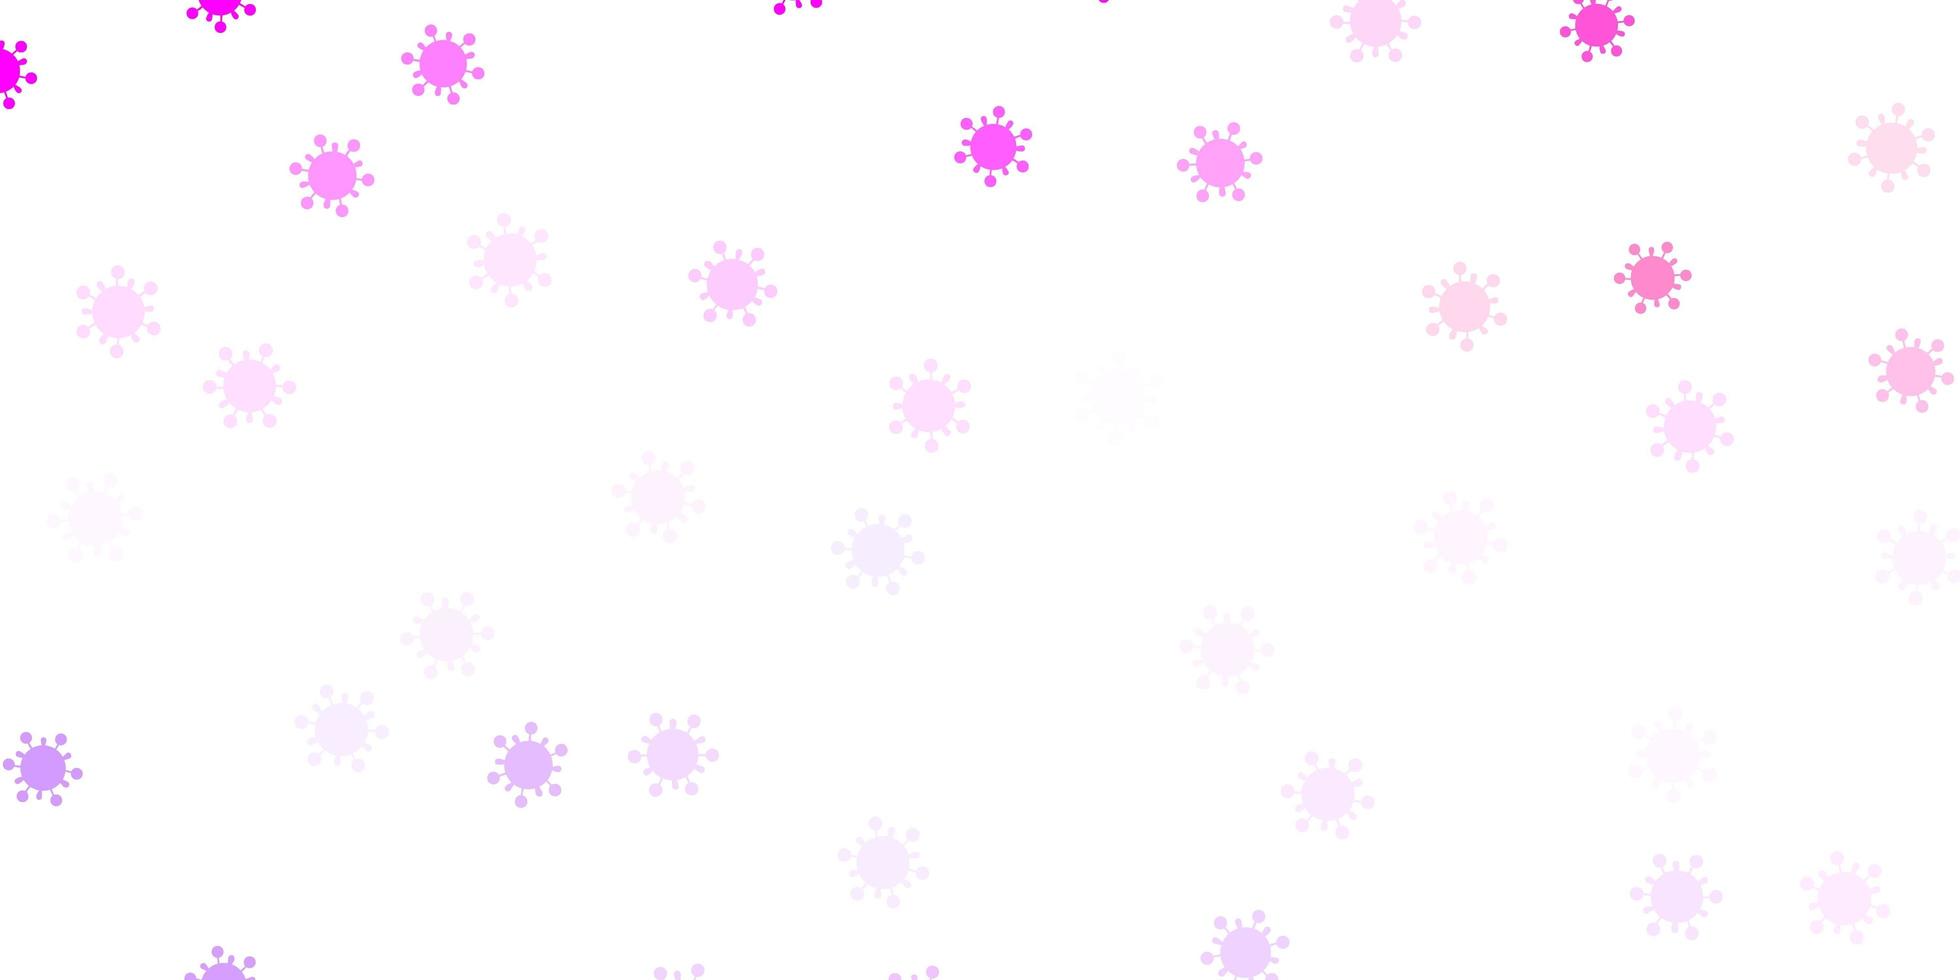 ljuslila, rosa vektor bakgrund med virussymboler